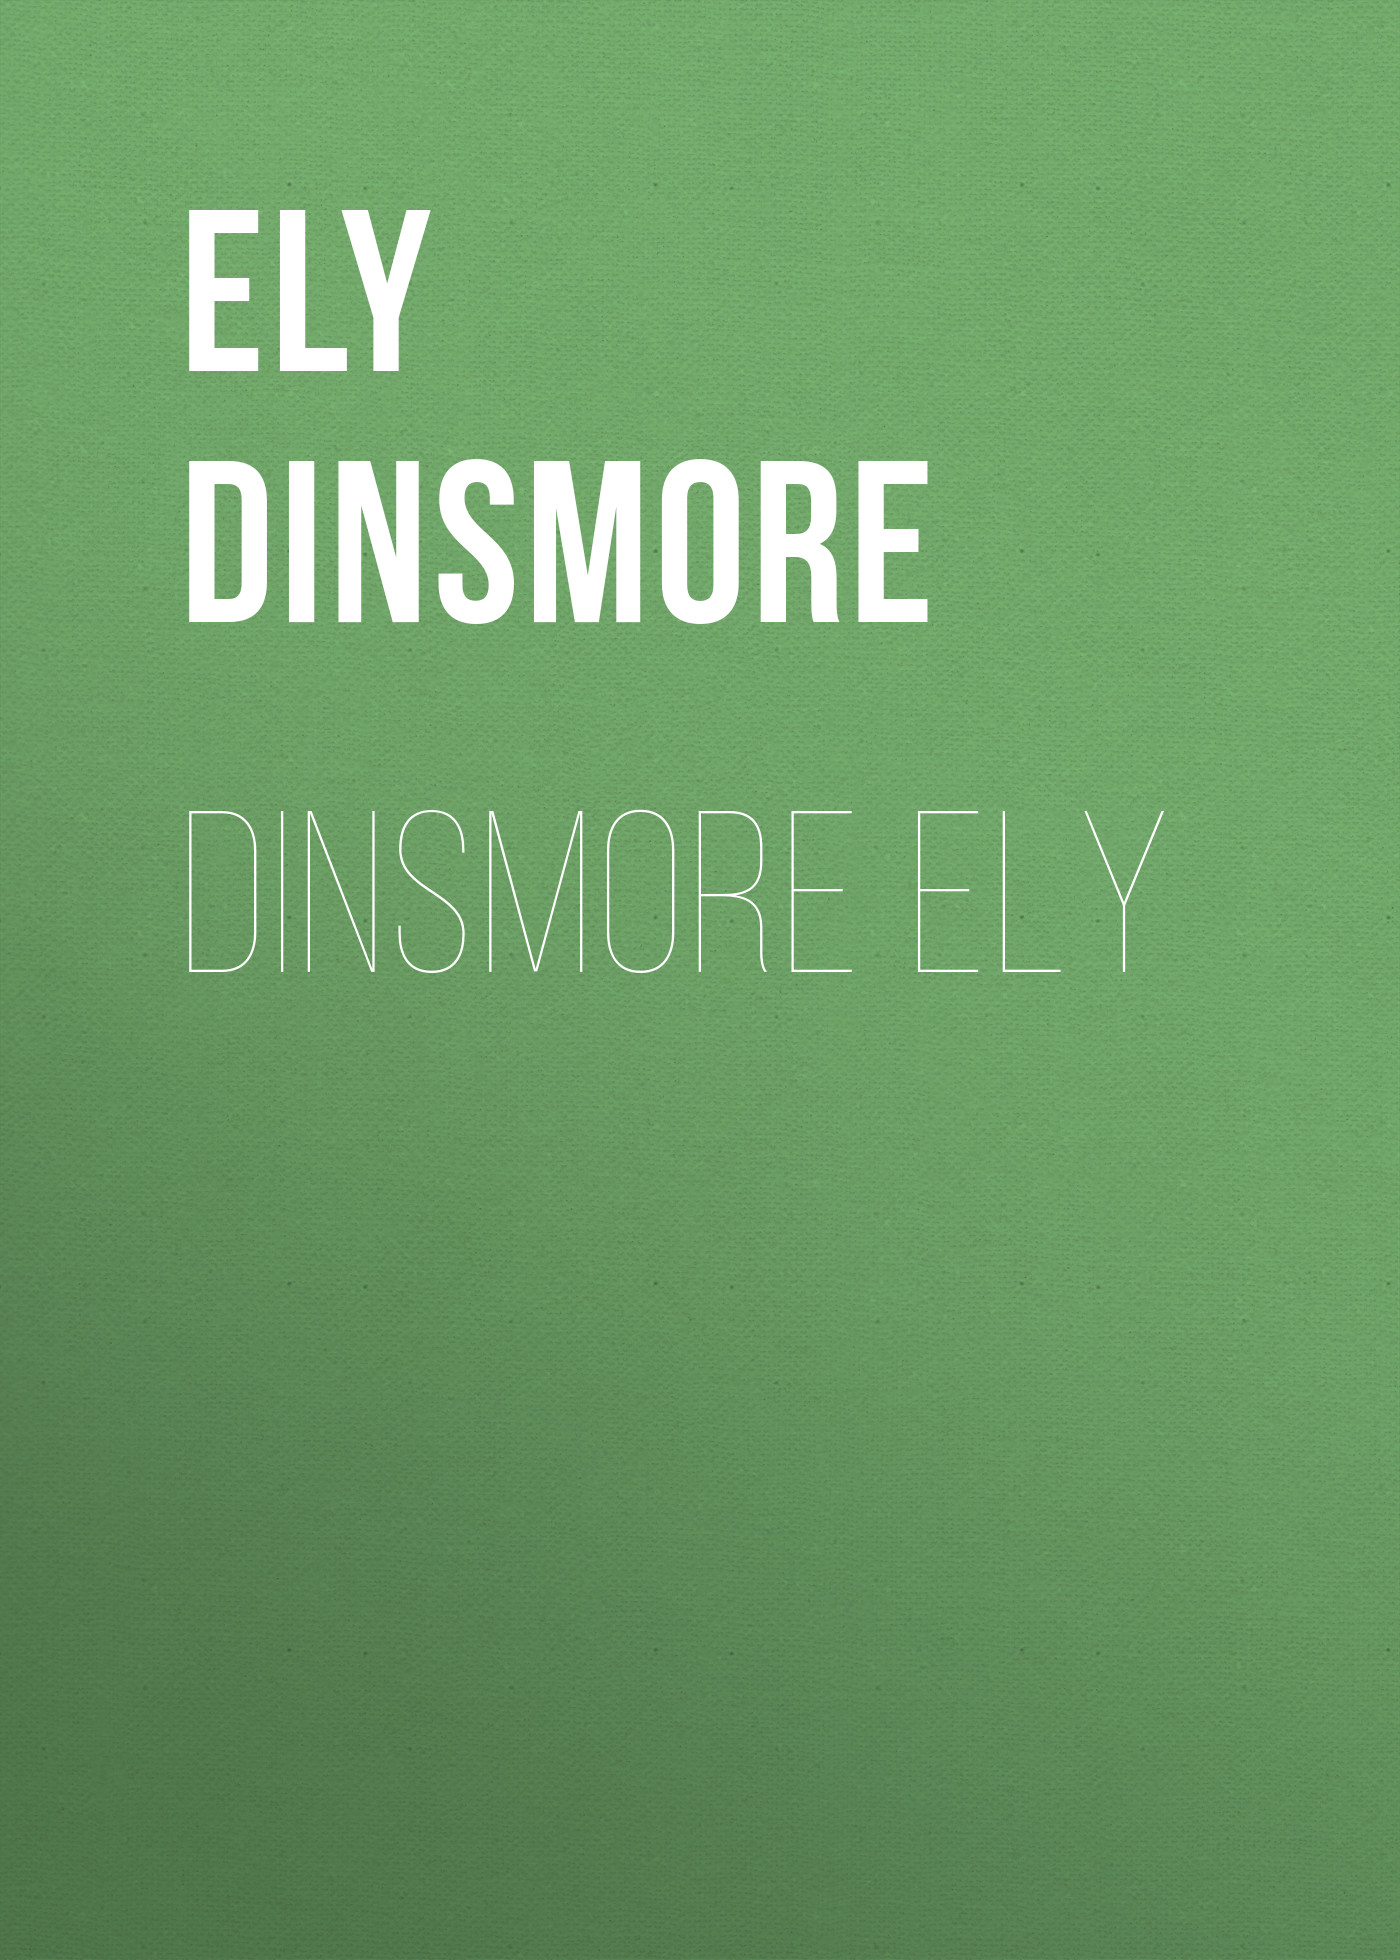 Книга Dinsmore Ely из серии , созданная Dinsmore Ely, может относится к жанру Зарубежная старинная литература, Зарубежная классика. Стоимость электронной книги Dinsmore Ely с идентификатором 24714193 составляет 0 руб.